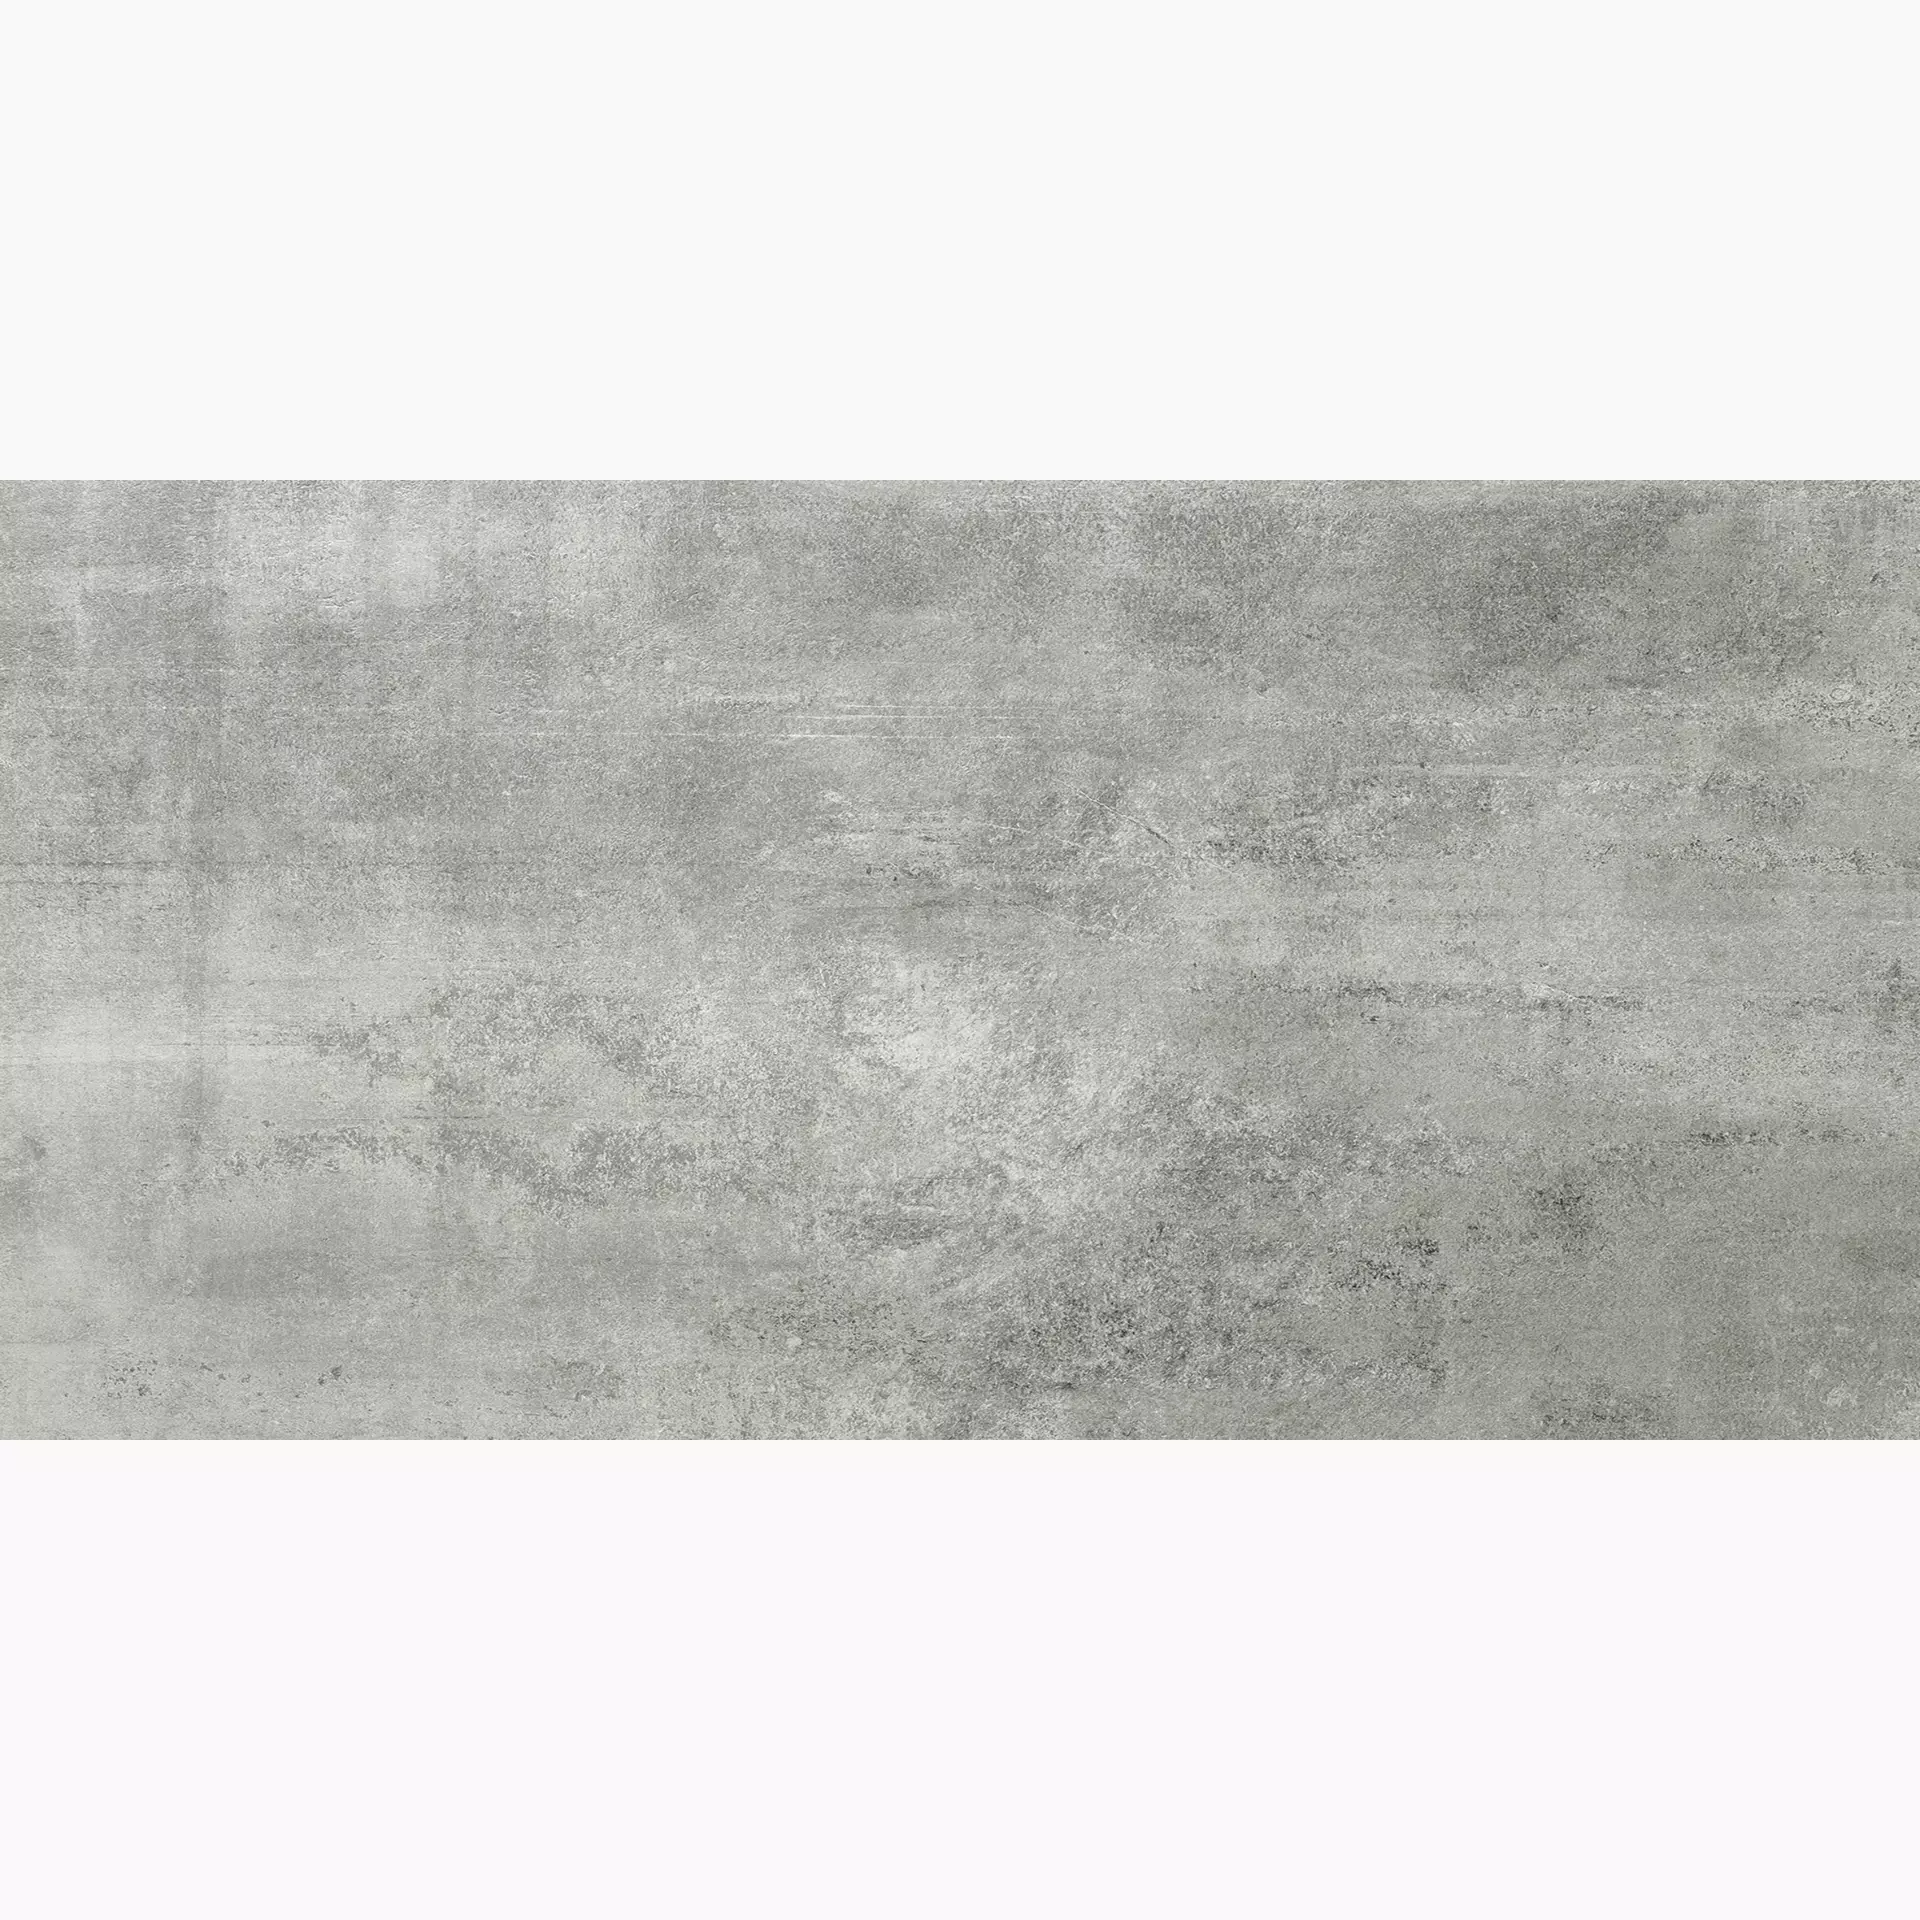 Florim Rawtech Raw-Dust Naturale – Matt 757818 60x120cm rectified 6mm